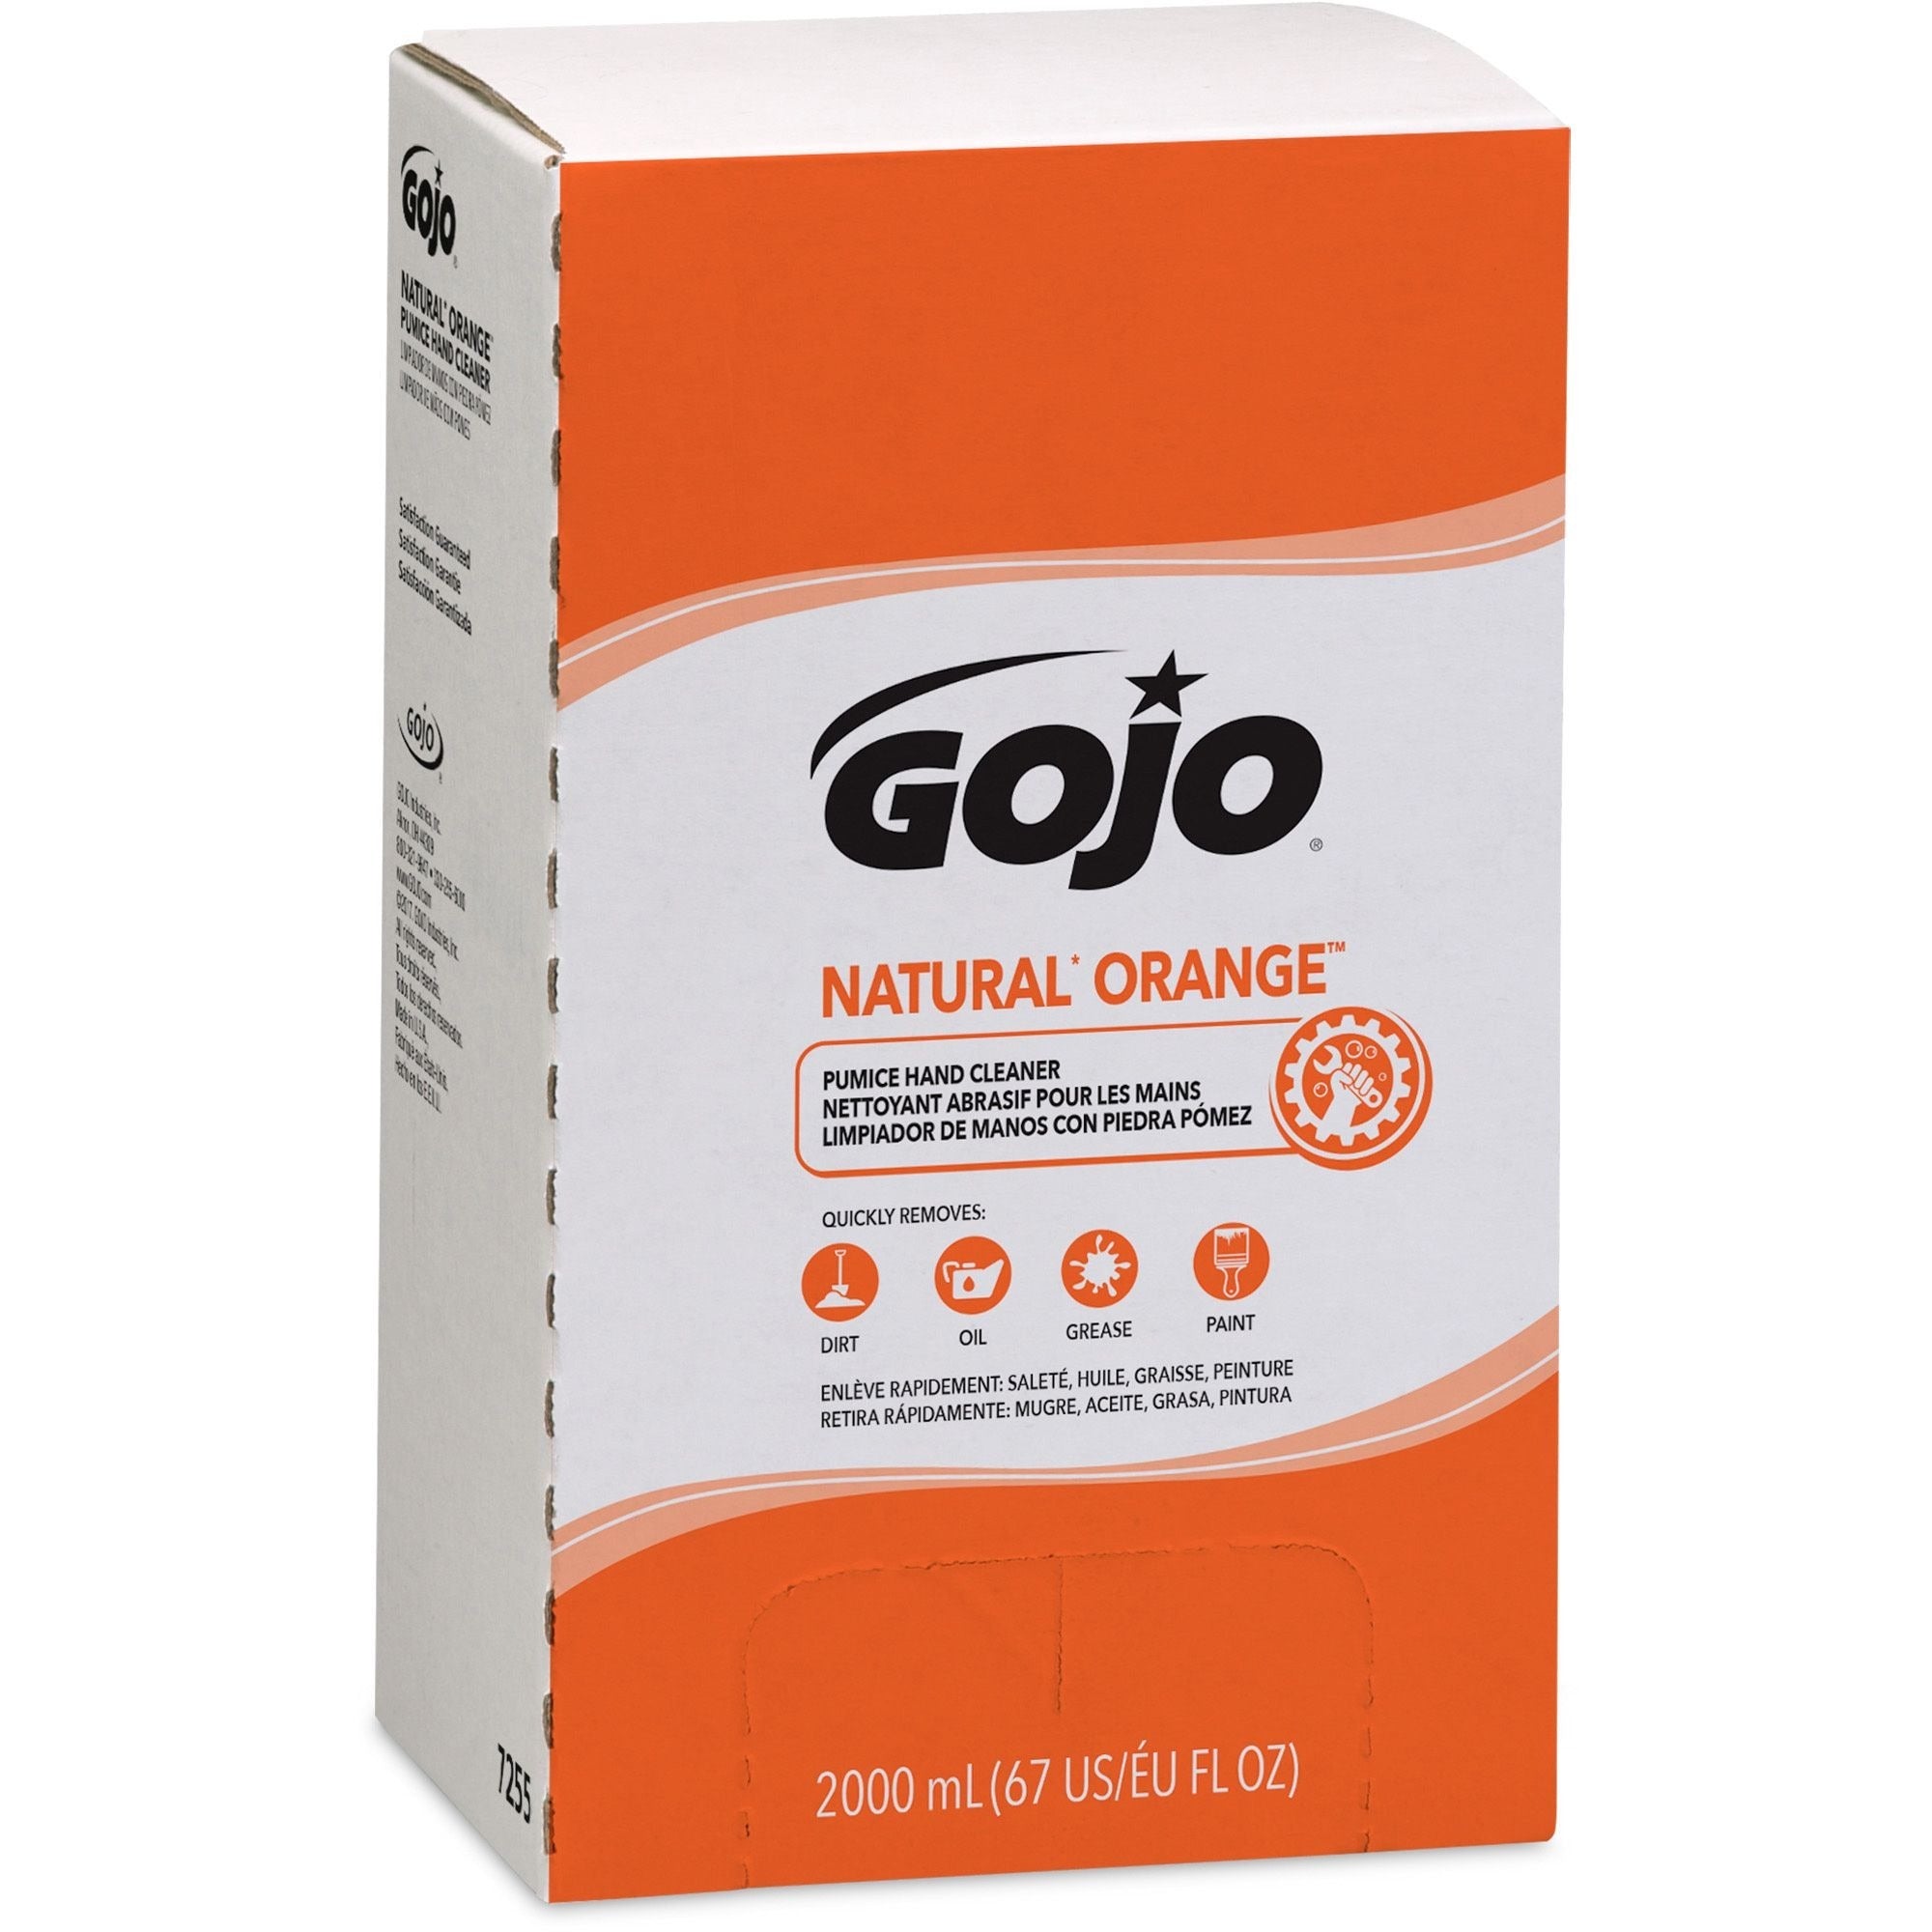 gojo-natural-orange-pumice-hand-cleaner-refill-orange-citrus-scentfor-676-fl-oz-2-l-dirt-remover-grease-remover-soilage-remover-hand-gray-4-carton_goj725504 - 4